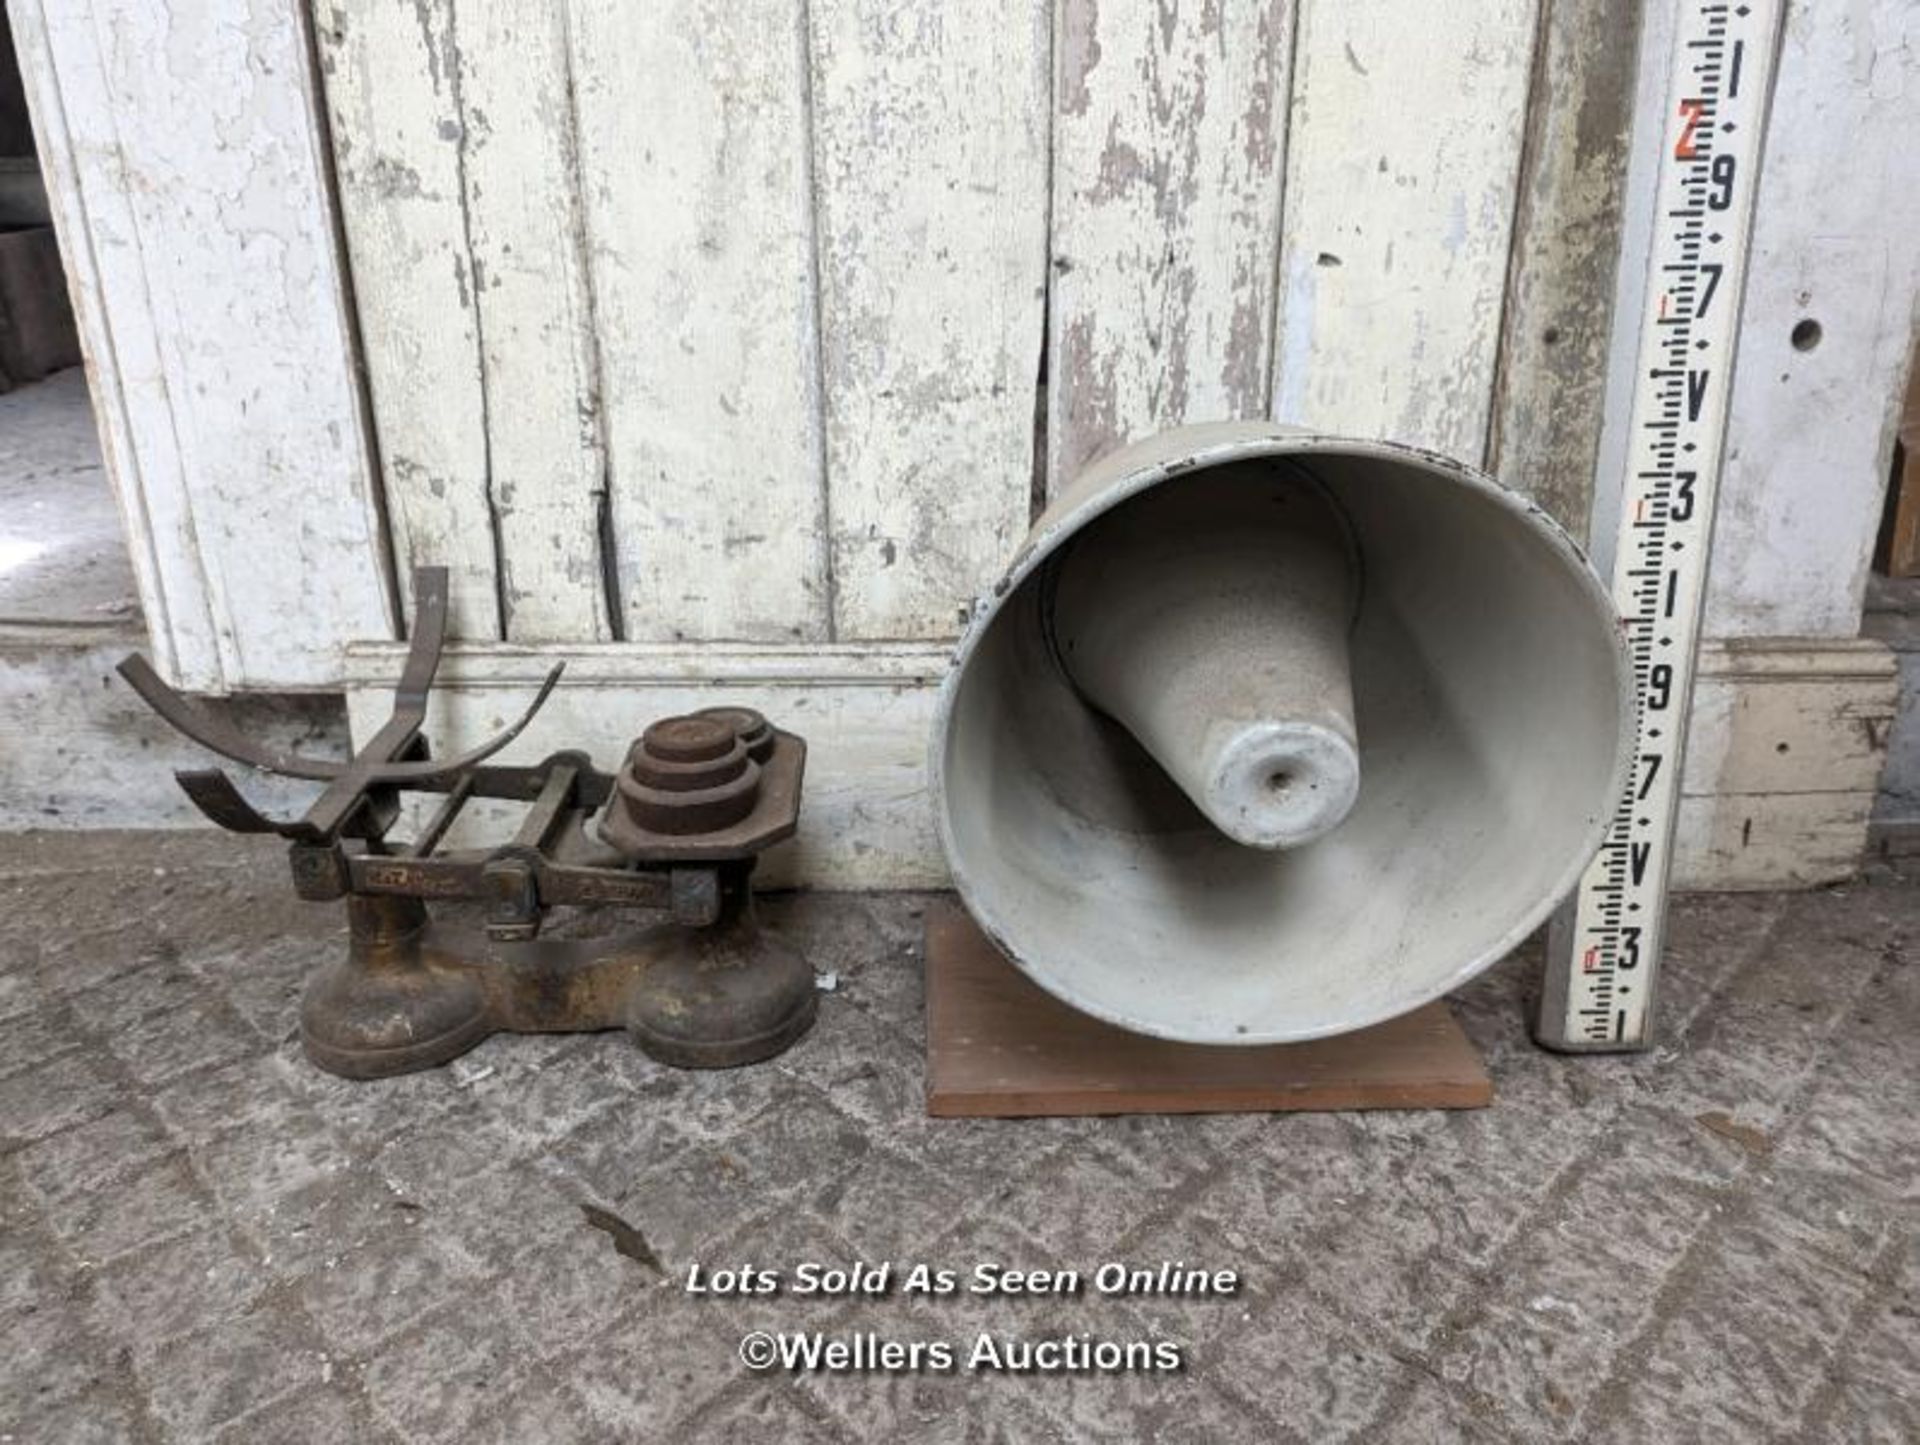 Engineering measure rule, white speaker/foghorn, set of old scales